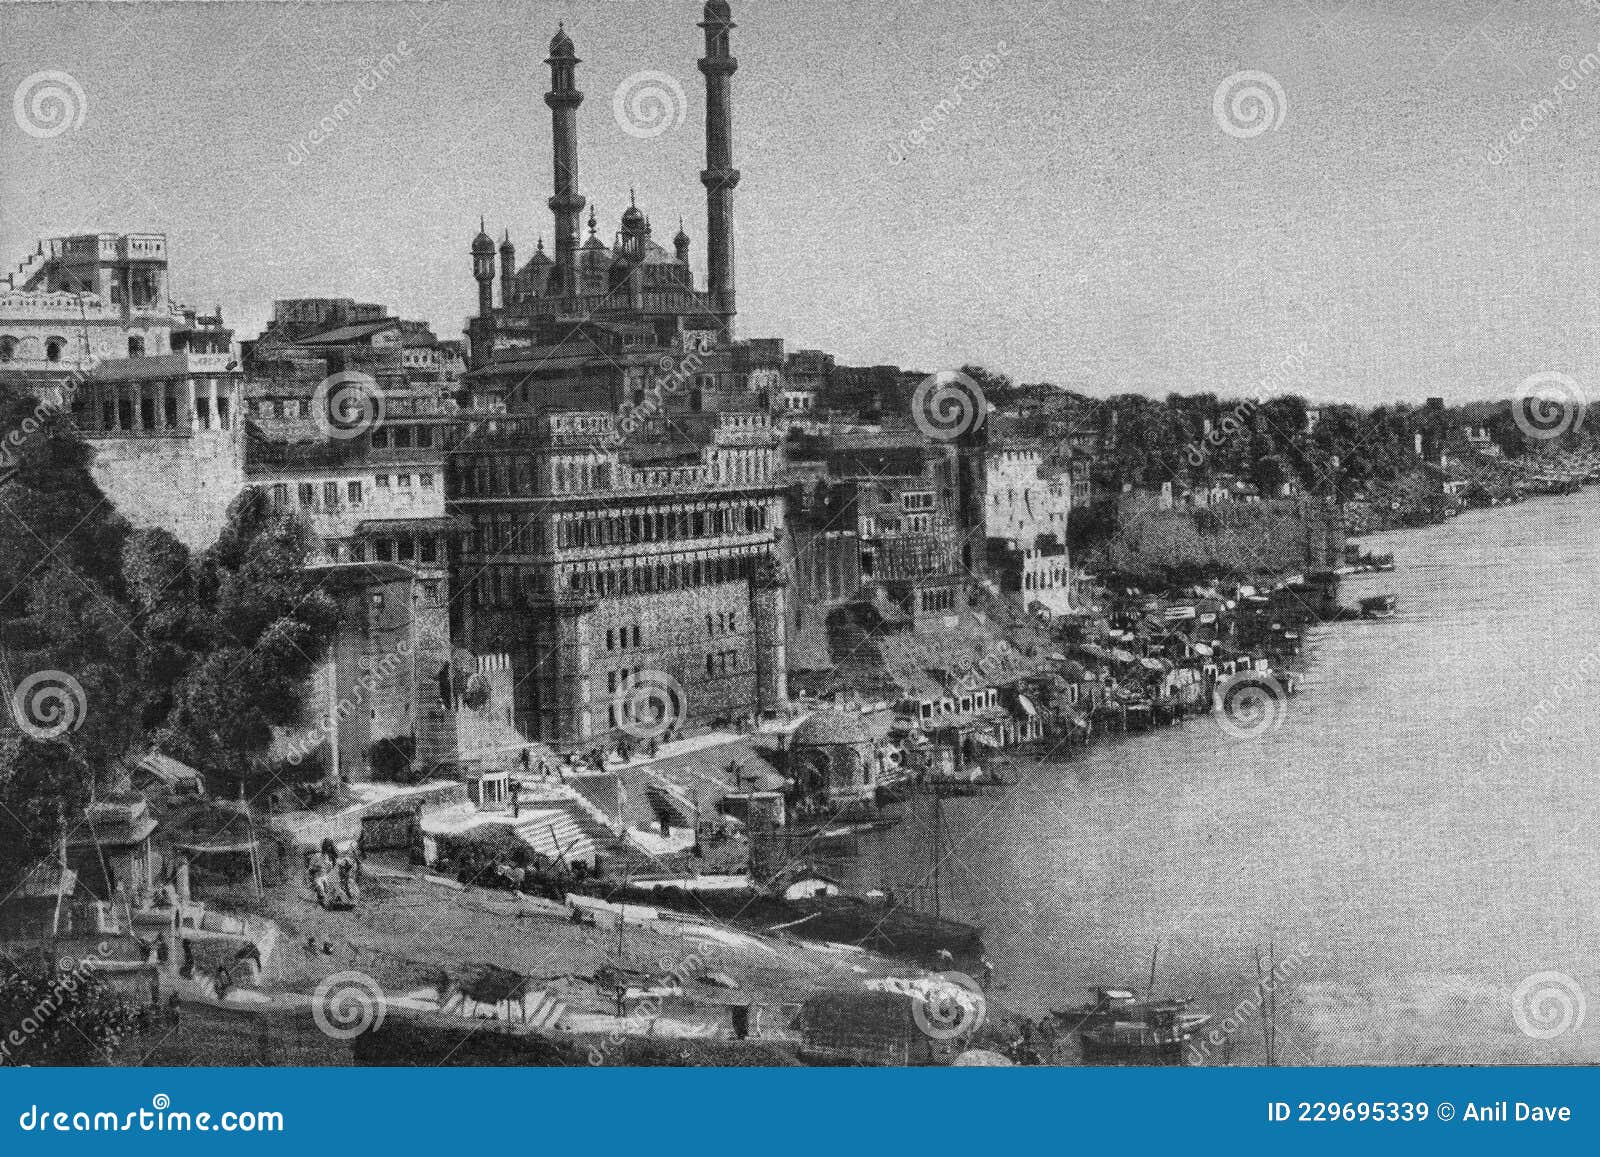 vintage old photo of benares ghats varanasi